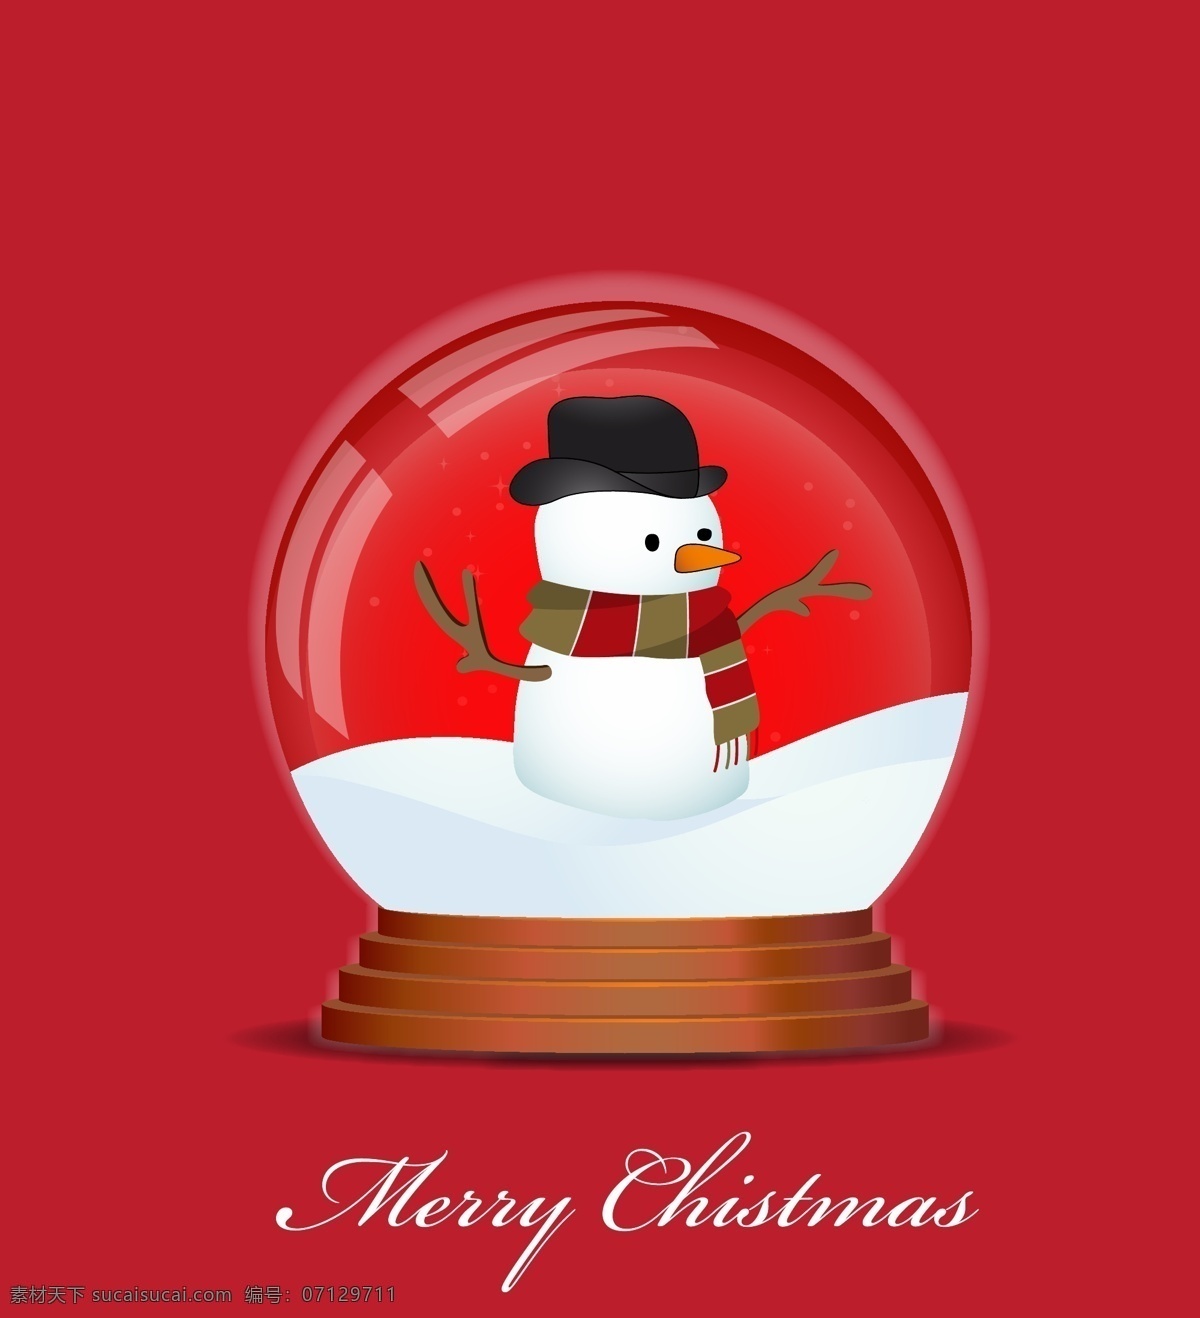 圣诞 水晶球 矢量 红色 白雪 雪人 围巾 矢量素材 设计素材